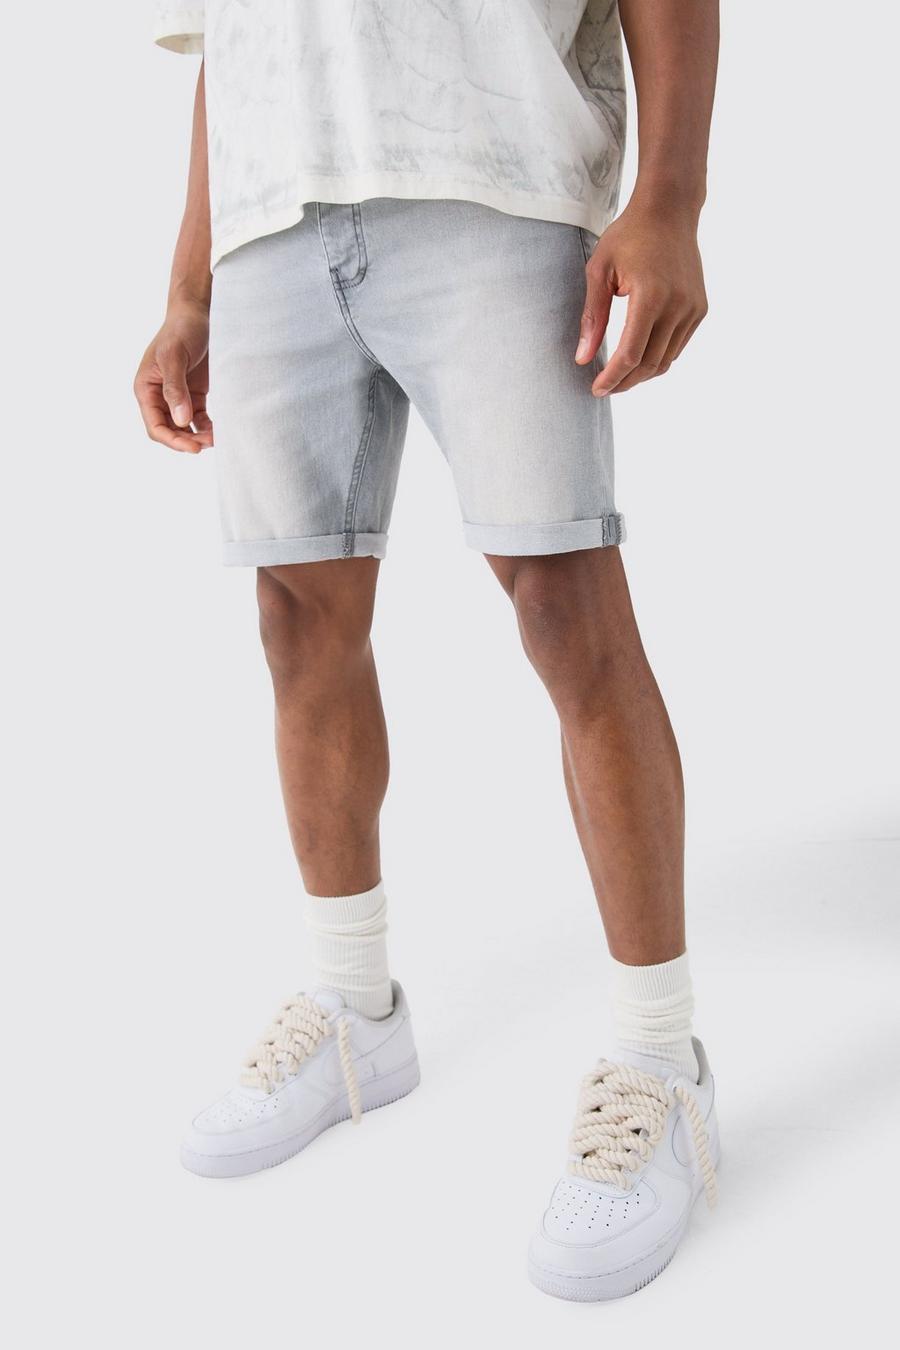 Pantalones cortos vaqueros pitillo elásticos en gris claro, Light grey